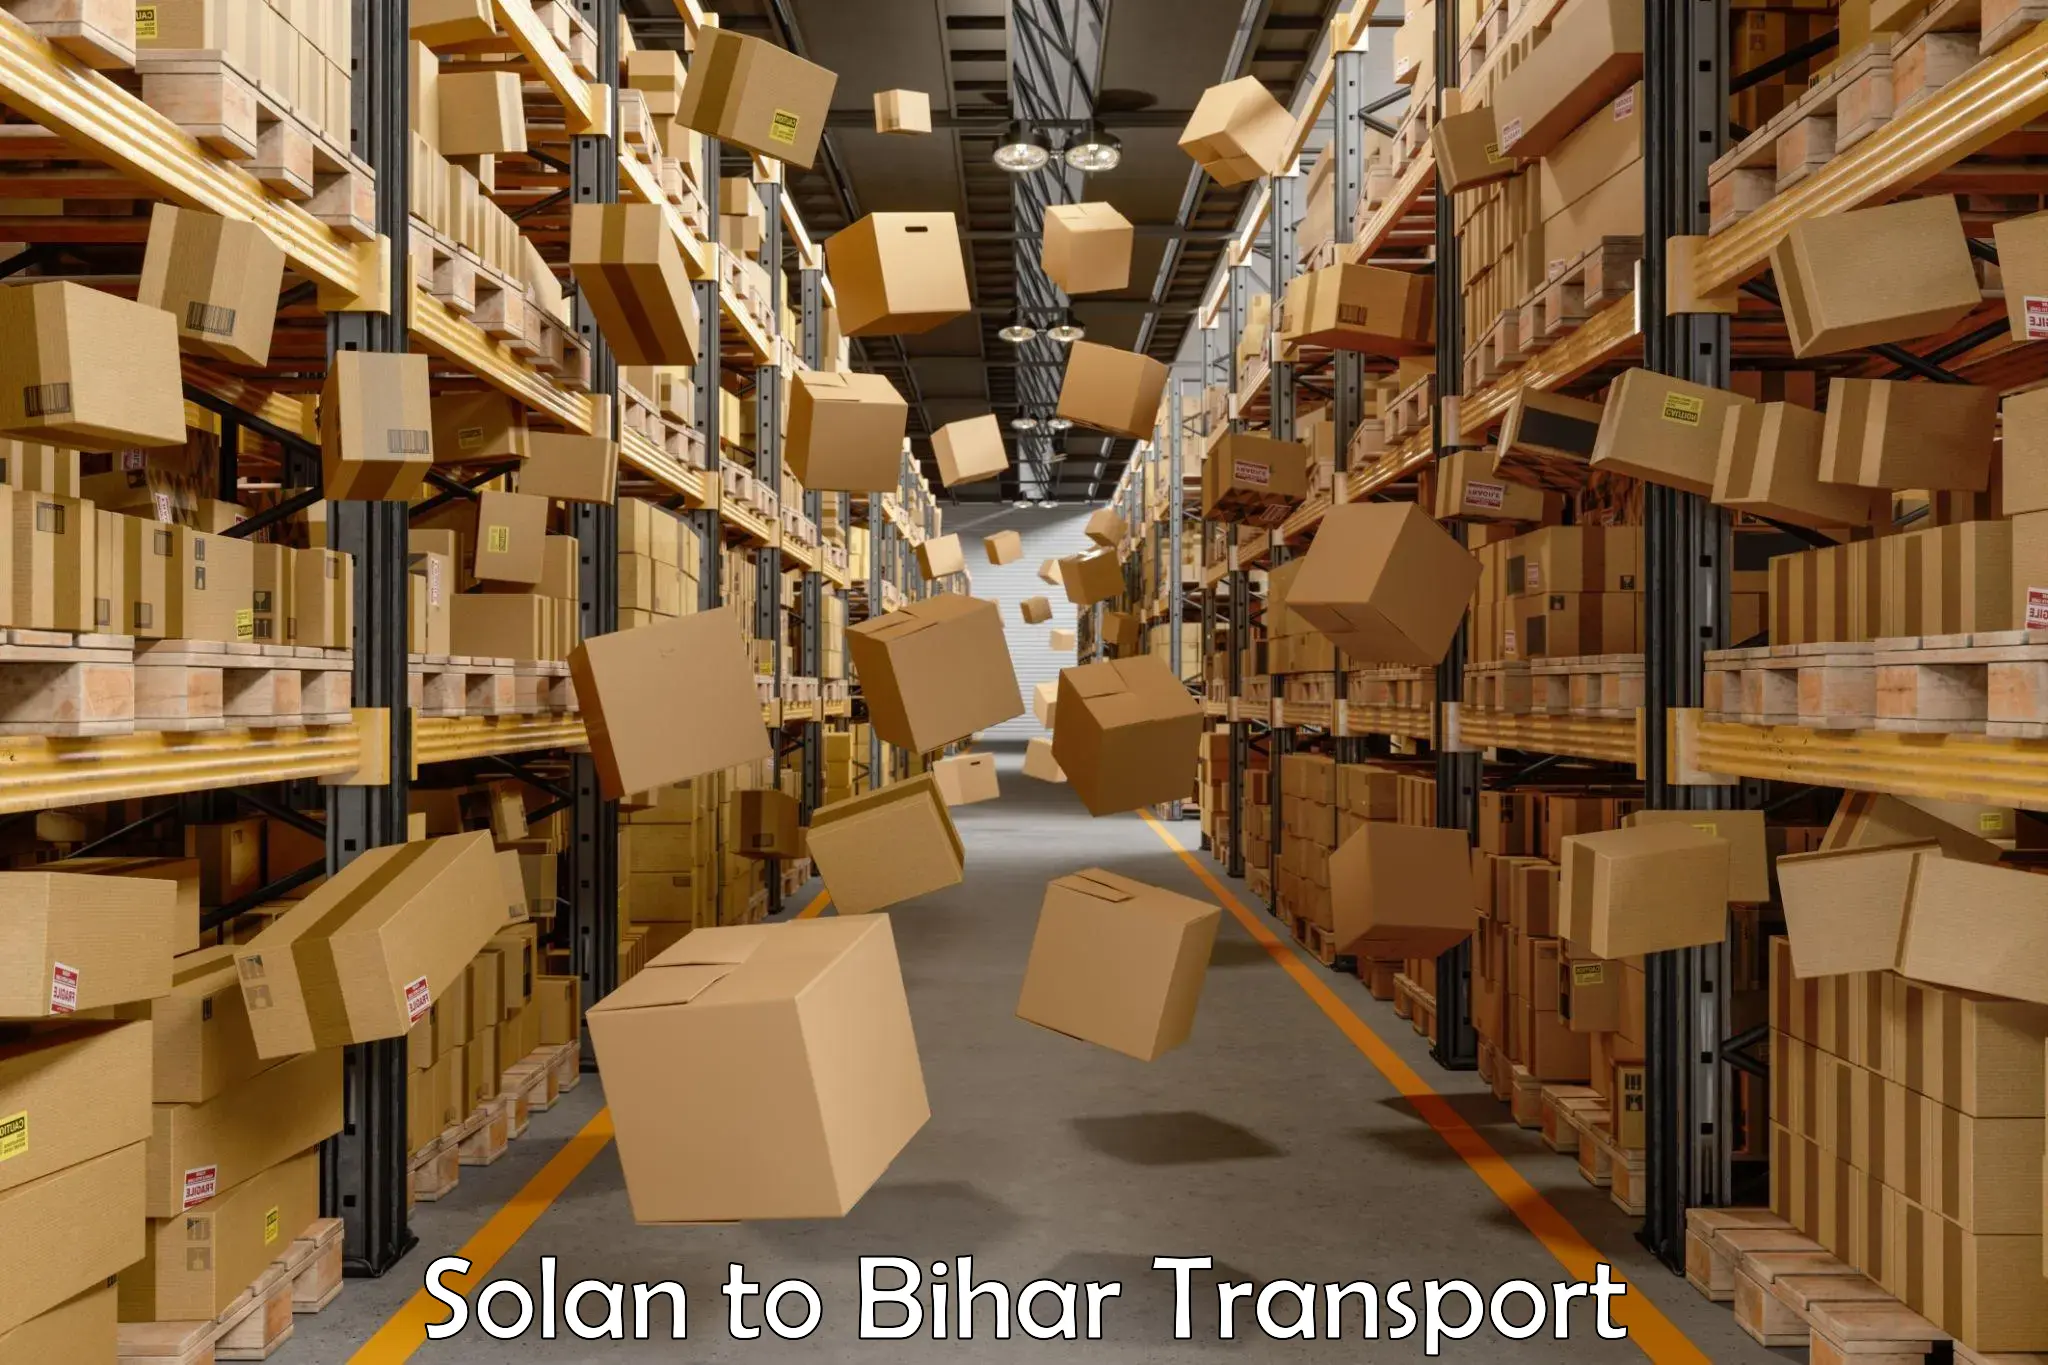 Bike shipping service Solan to Bihar